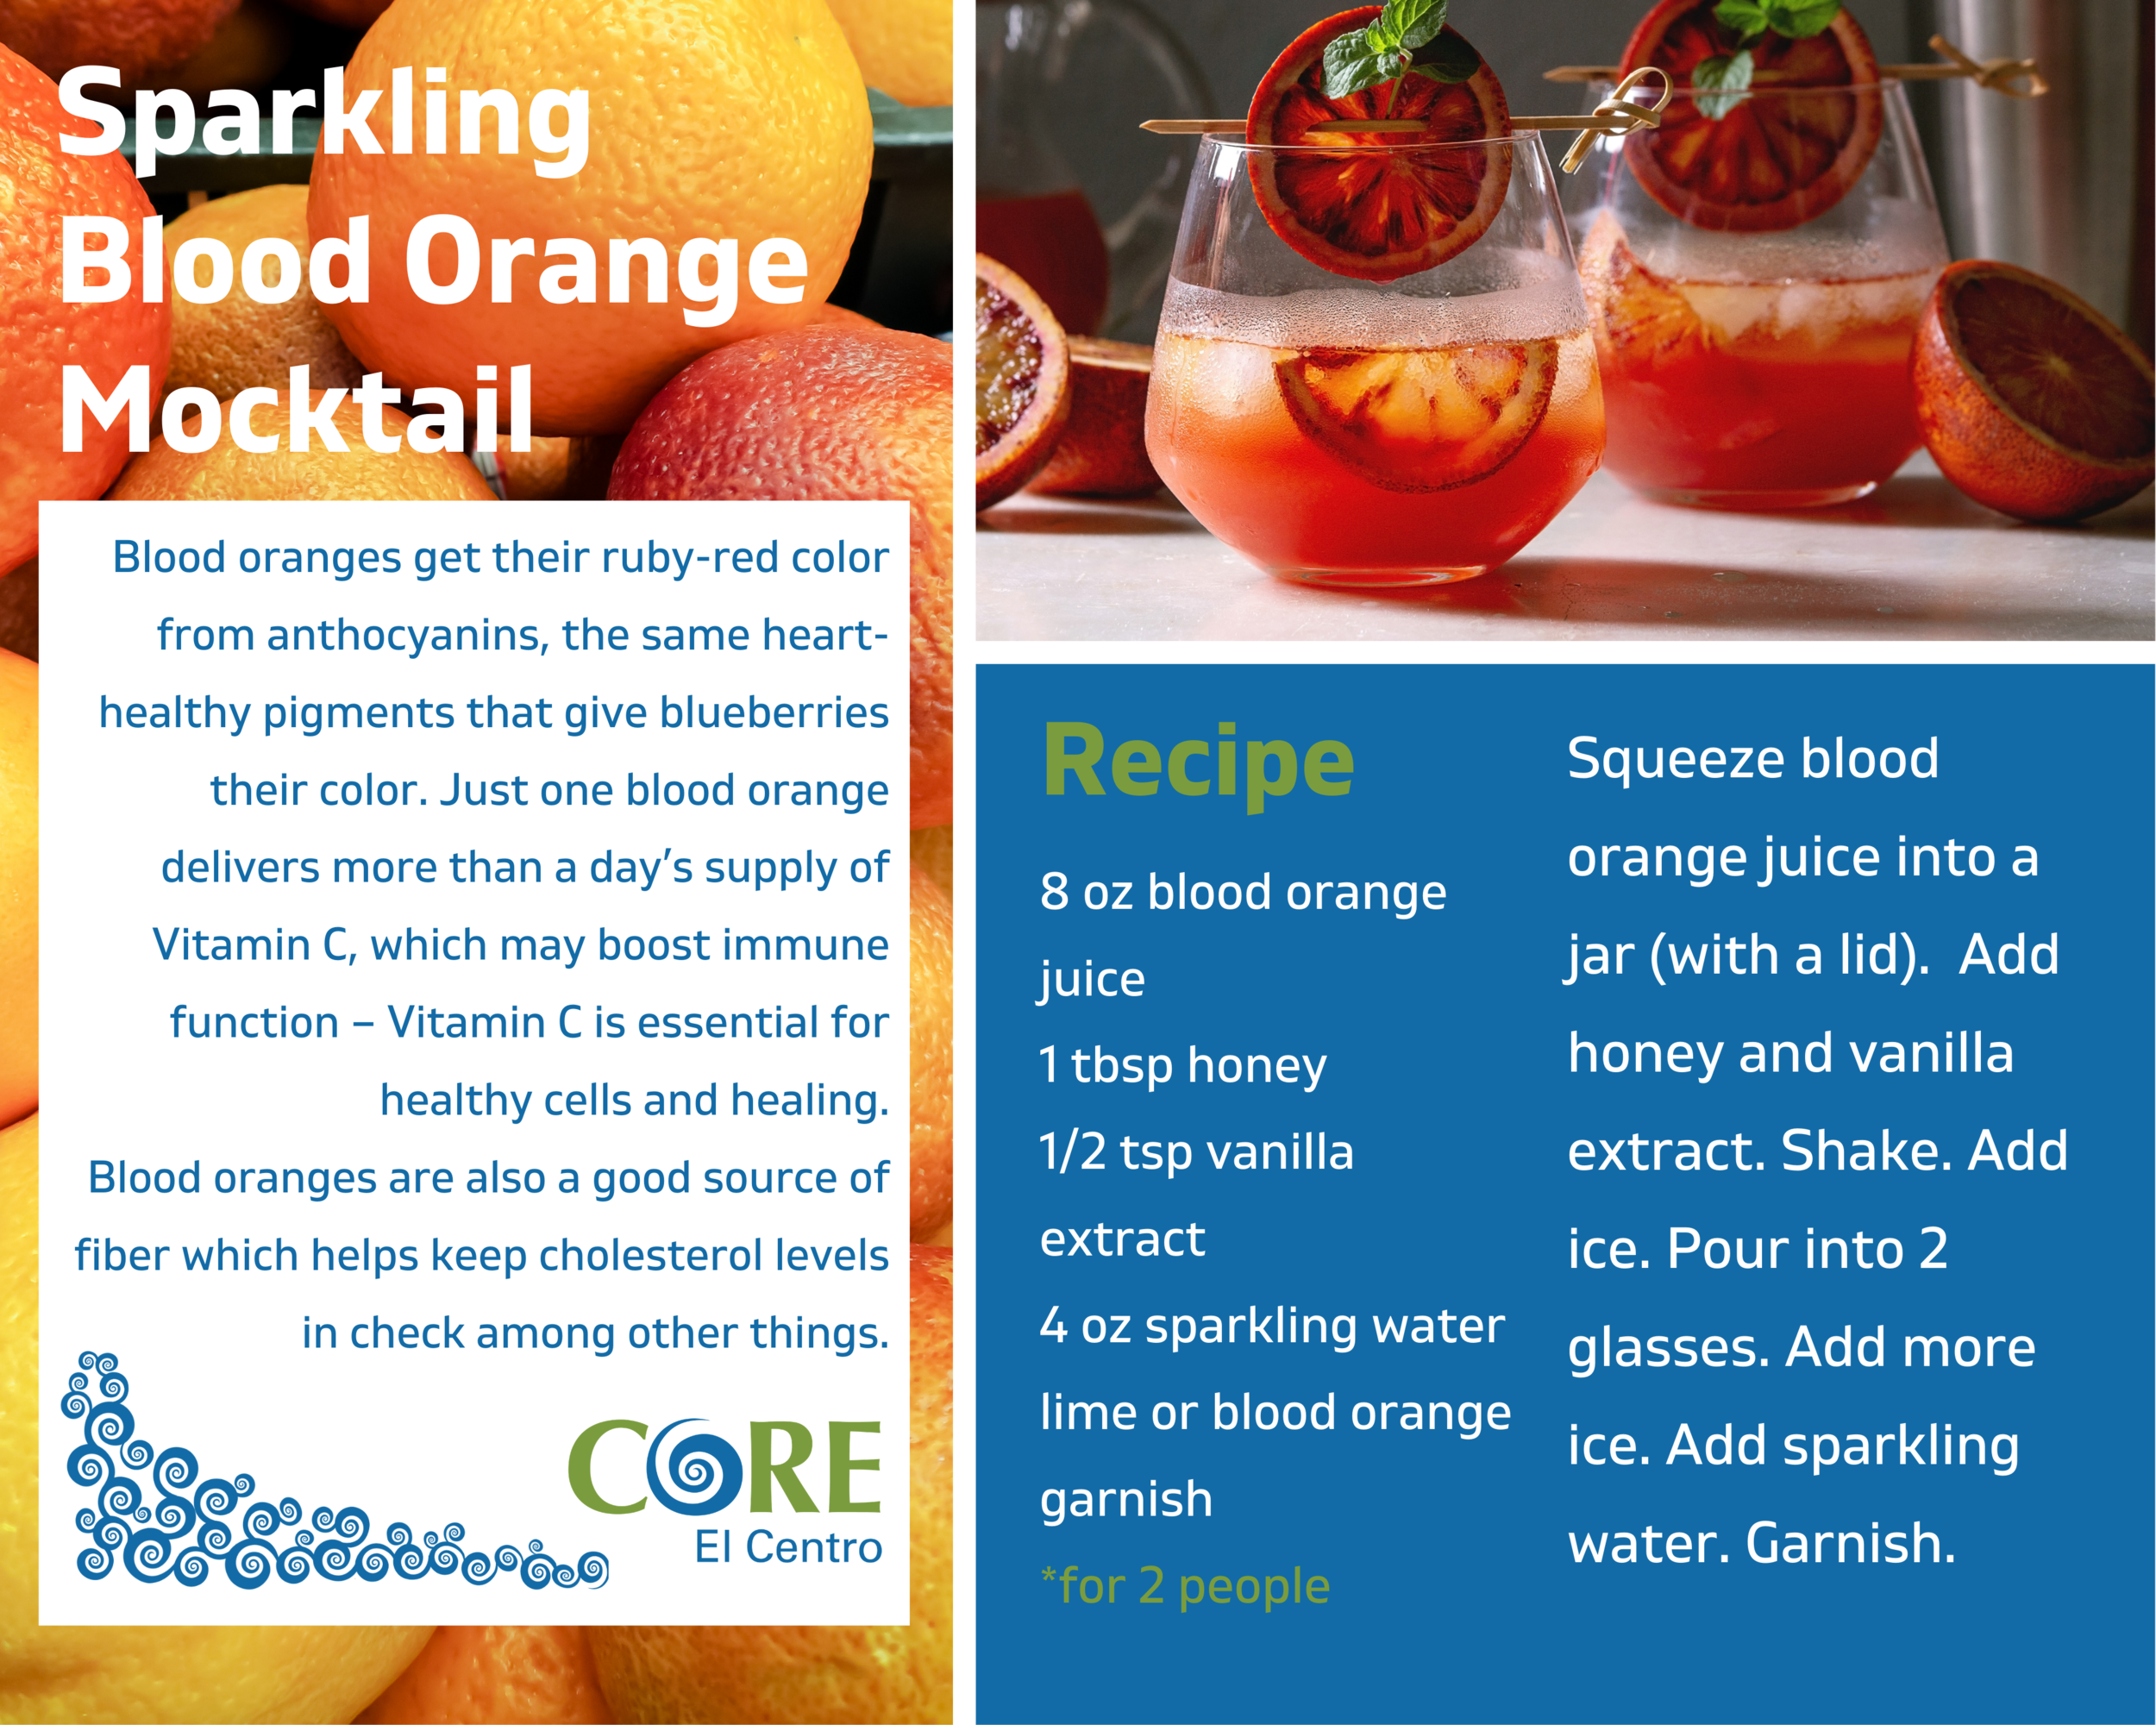 Sparkling Blood Orange Mocktail recipe momentum.png